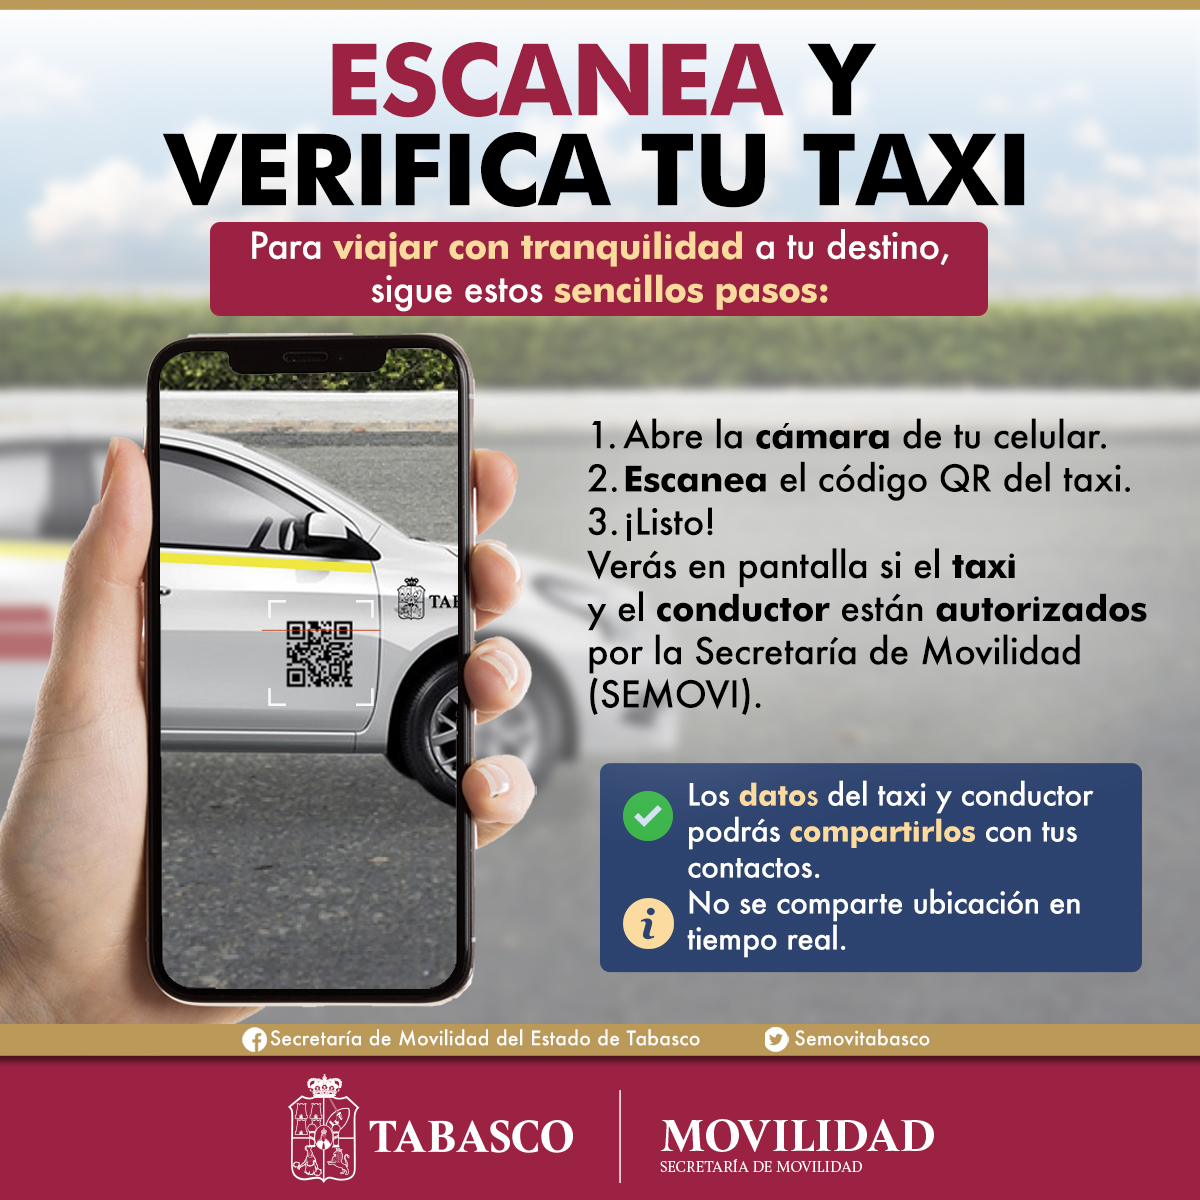 El taxi de Tabasco incorpora un código QR en la puerta para saber los datos del vehículo